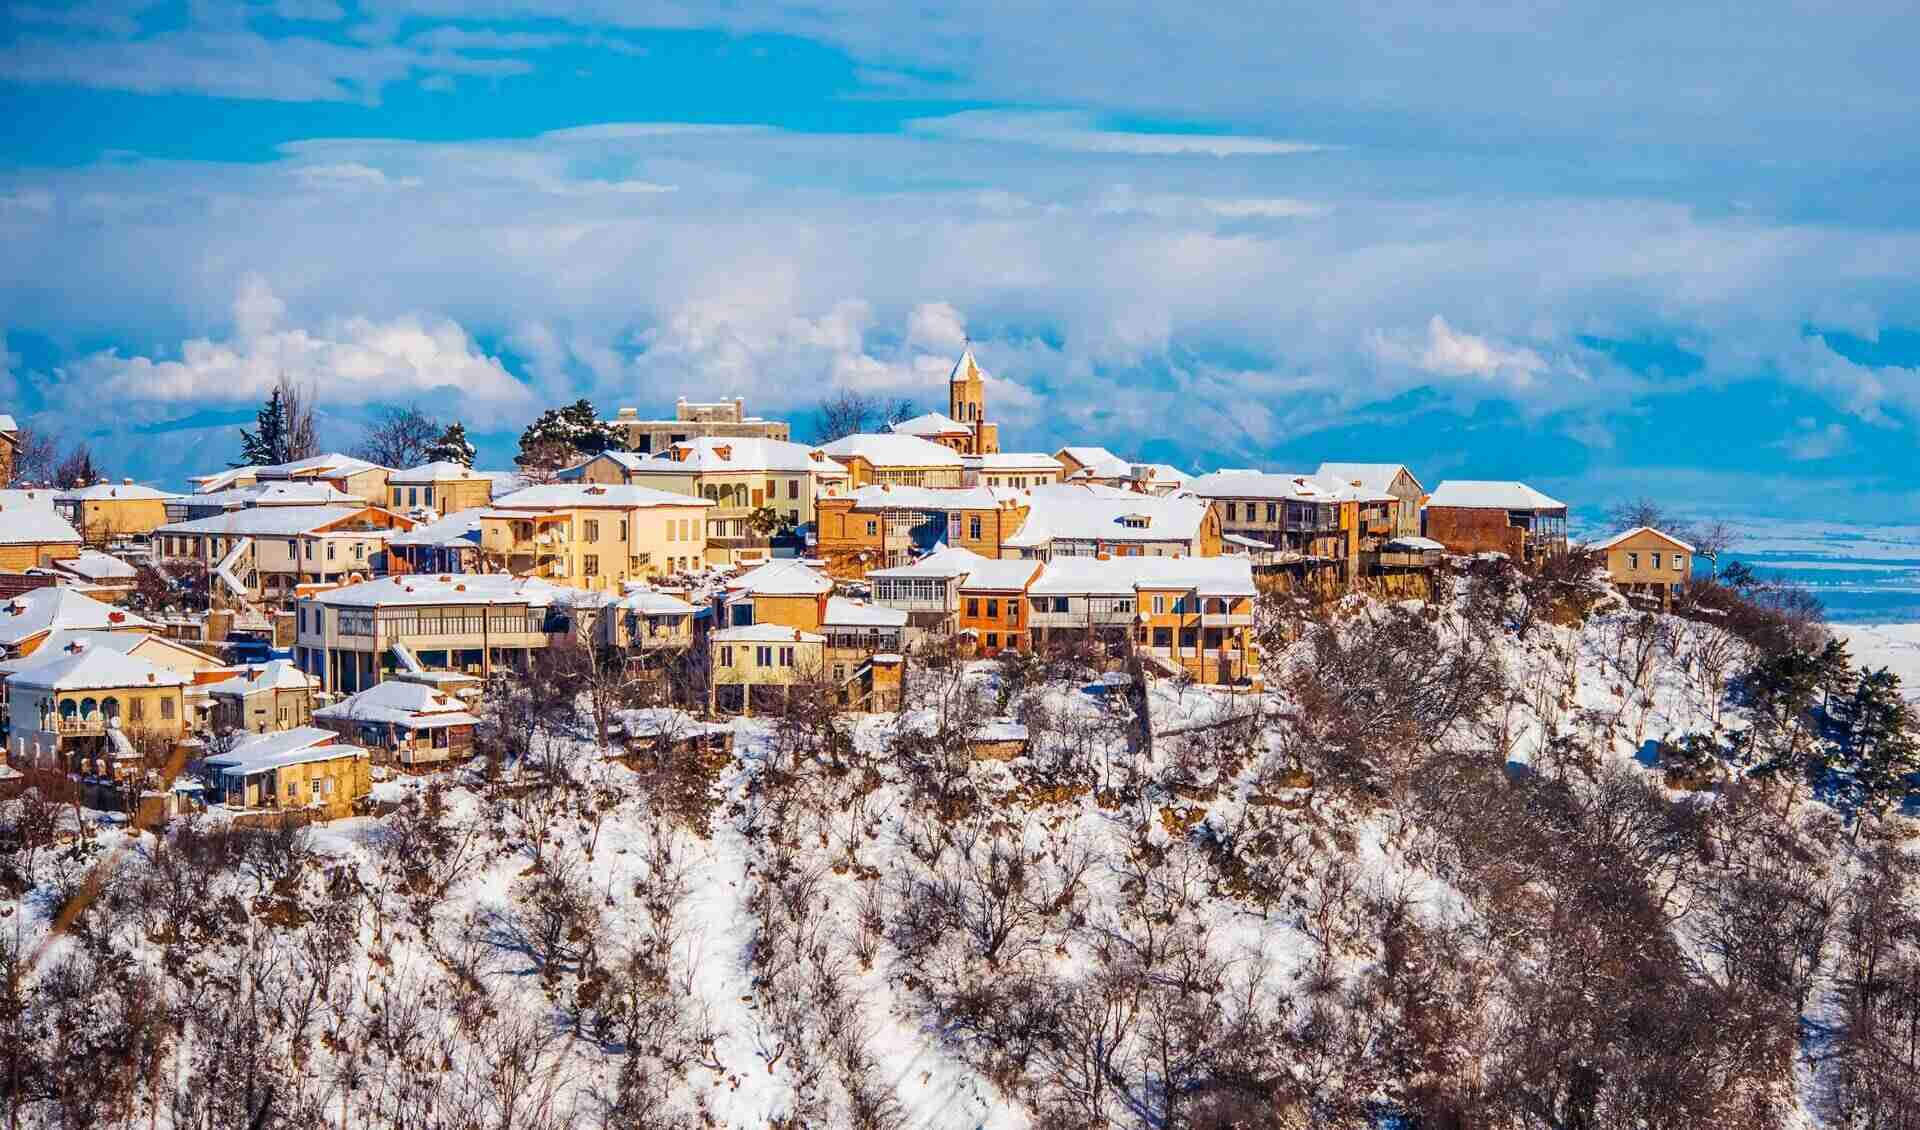 Тбилиси в январе: фейерверк эмоций в красивом городе